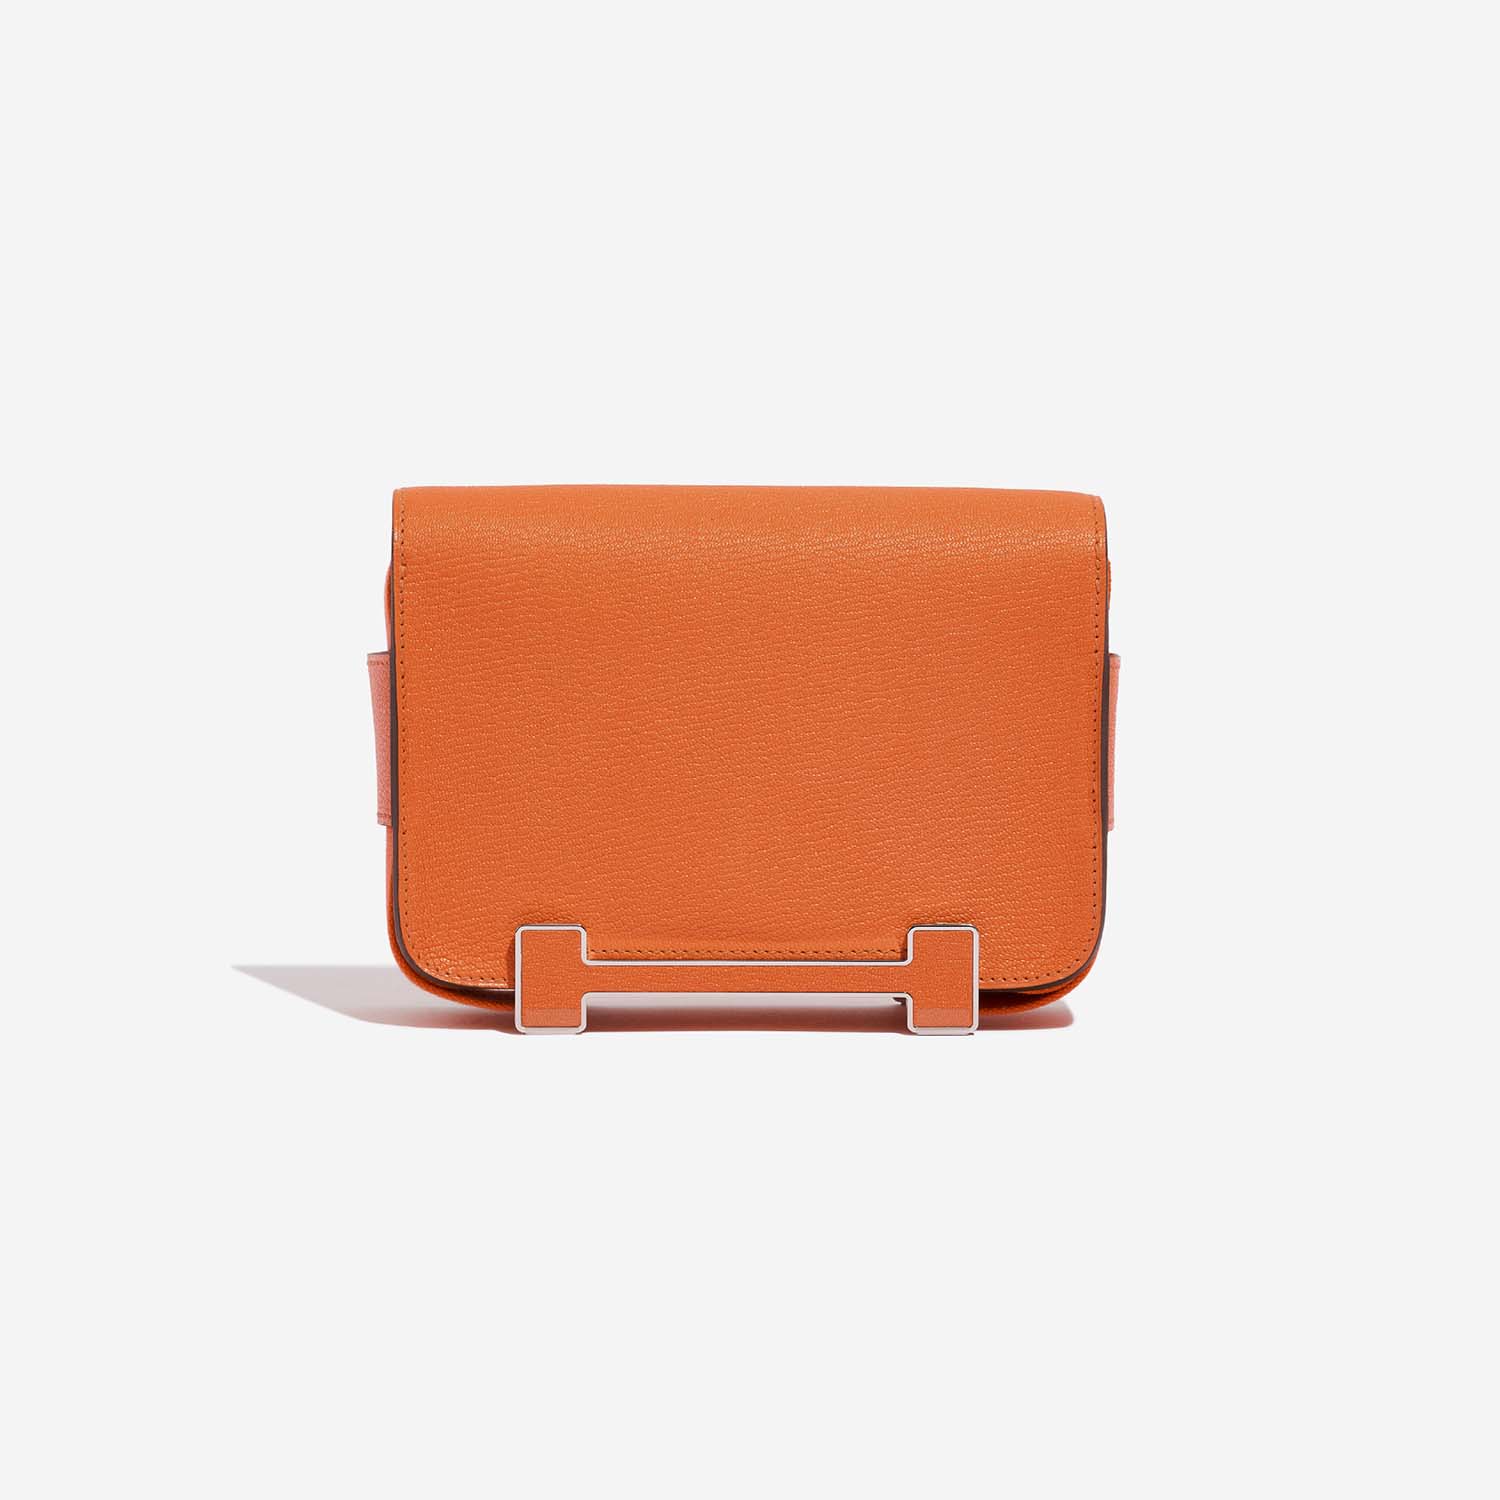 Hermès Geta Orange Back | Verkaufen Sie Ihre Designer-Tasche auf Saclab.com